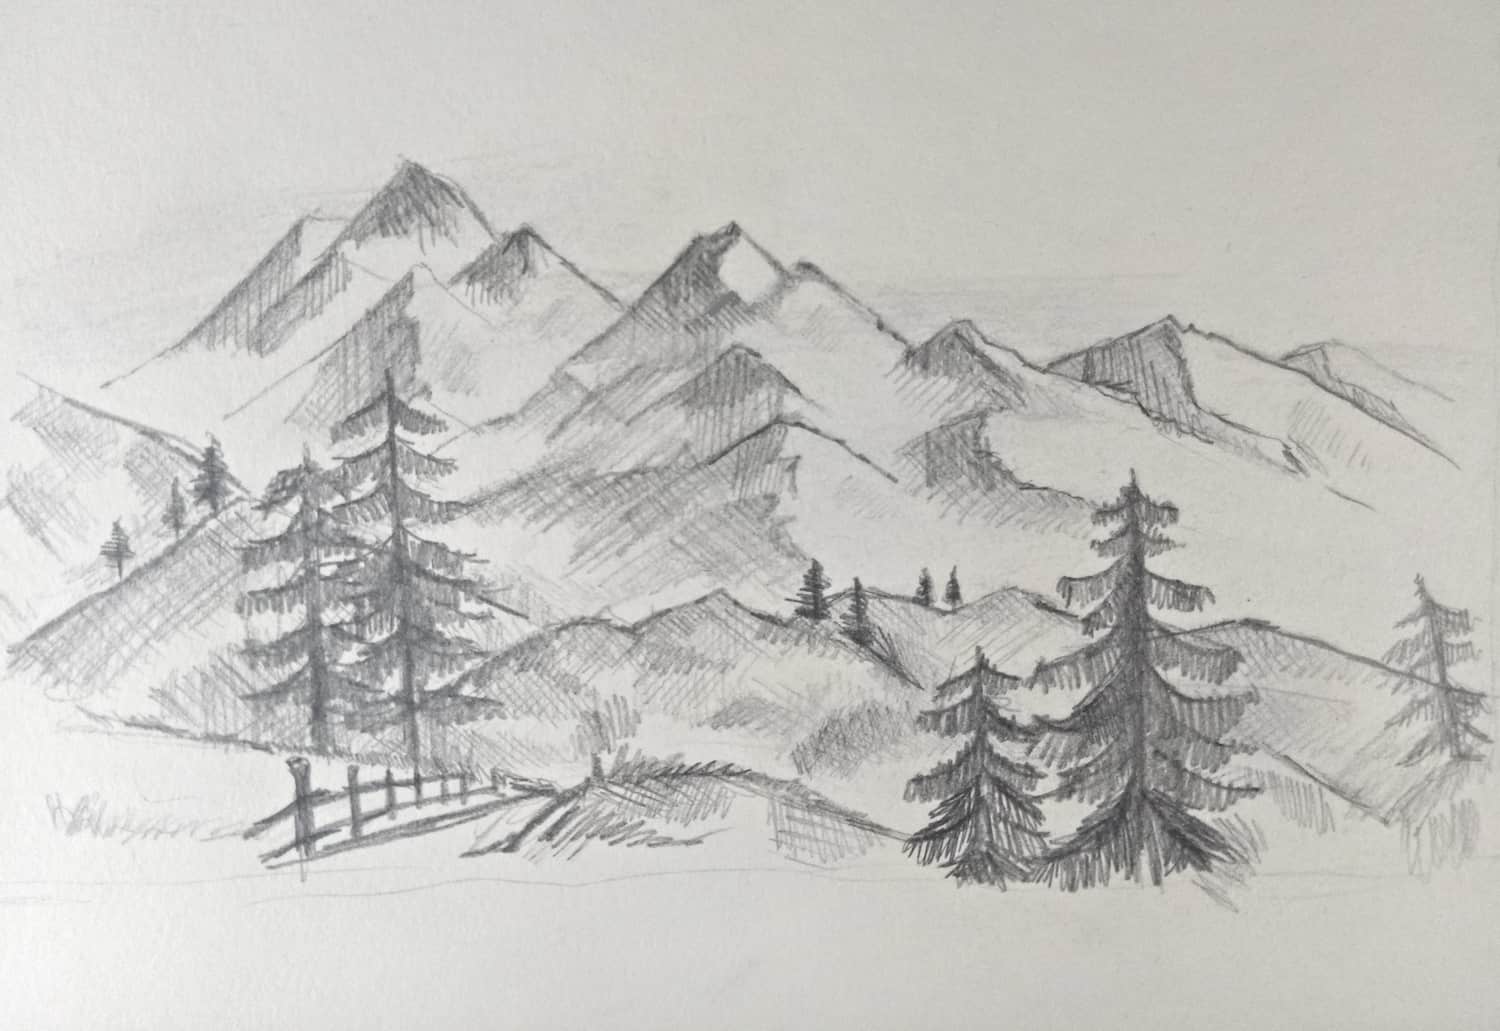 Berge zeichnen lernen: Eine einfache Anleitung für ein Bergmotiv